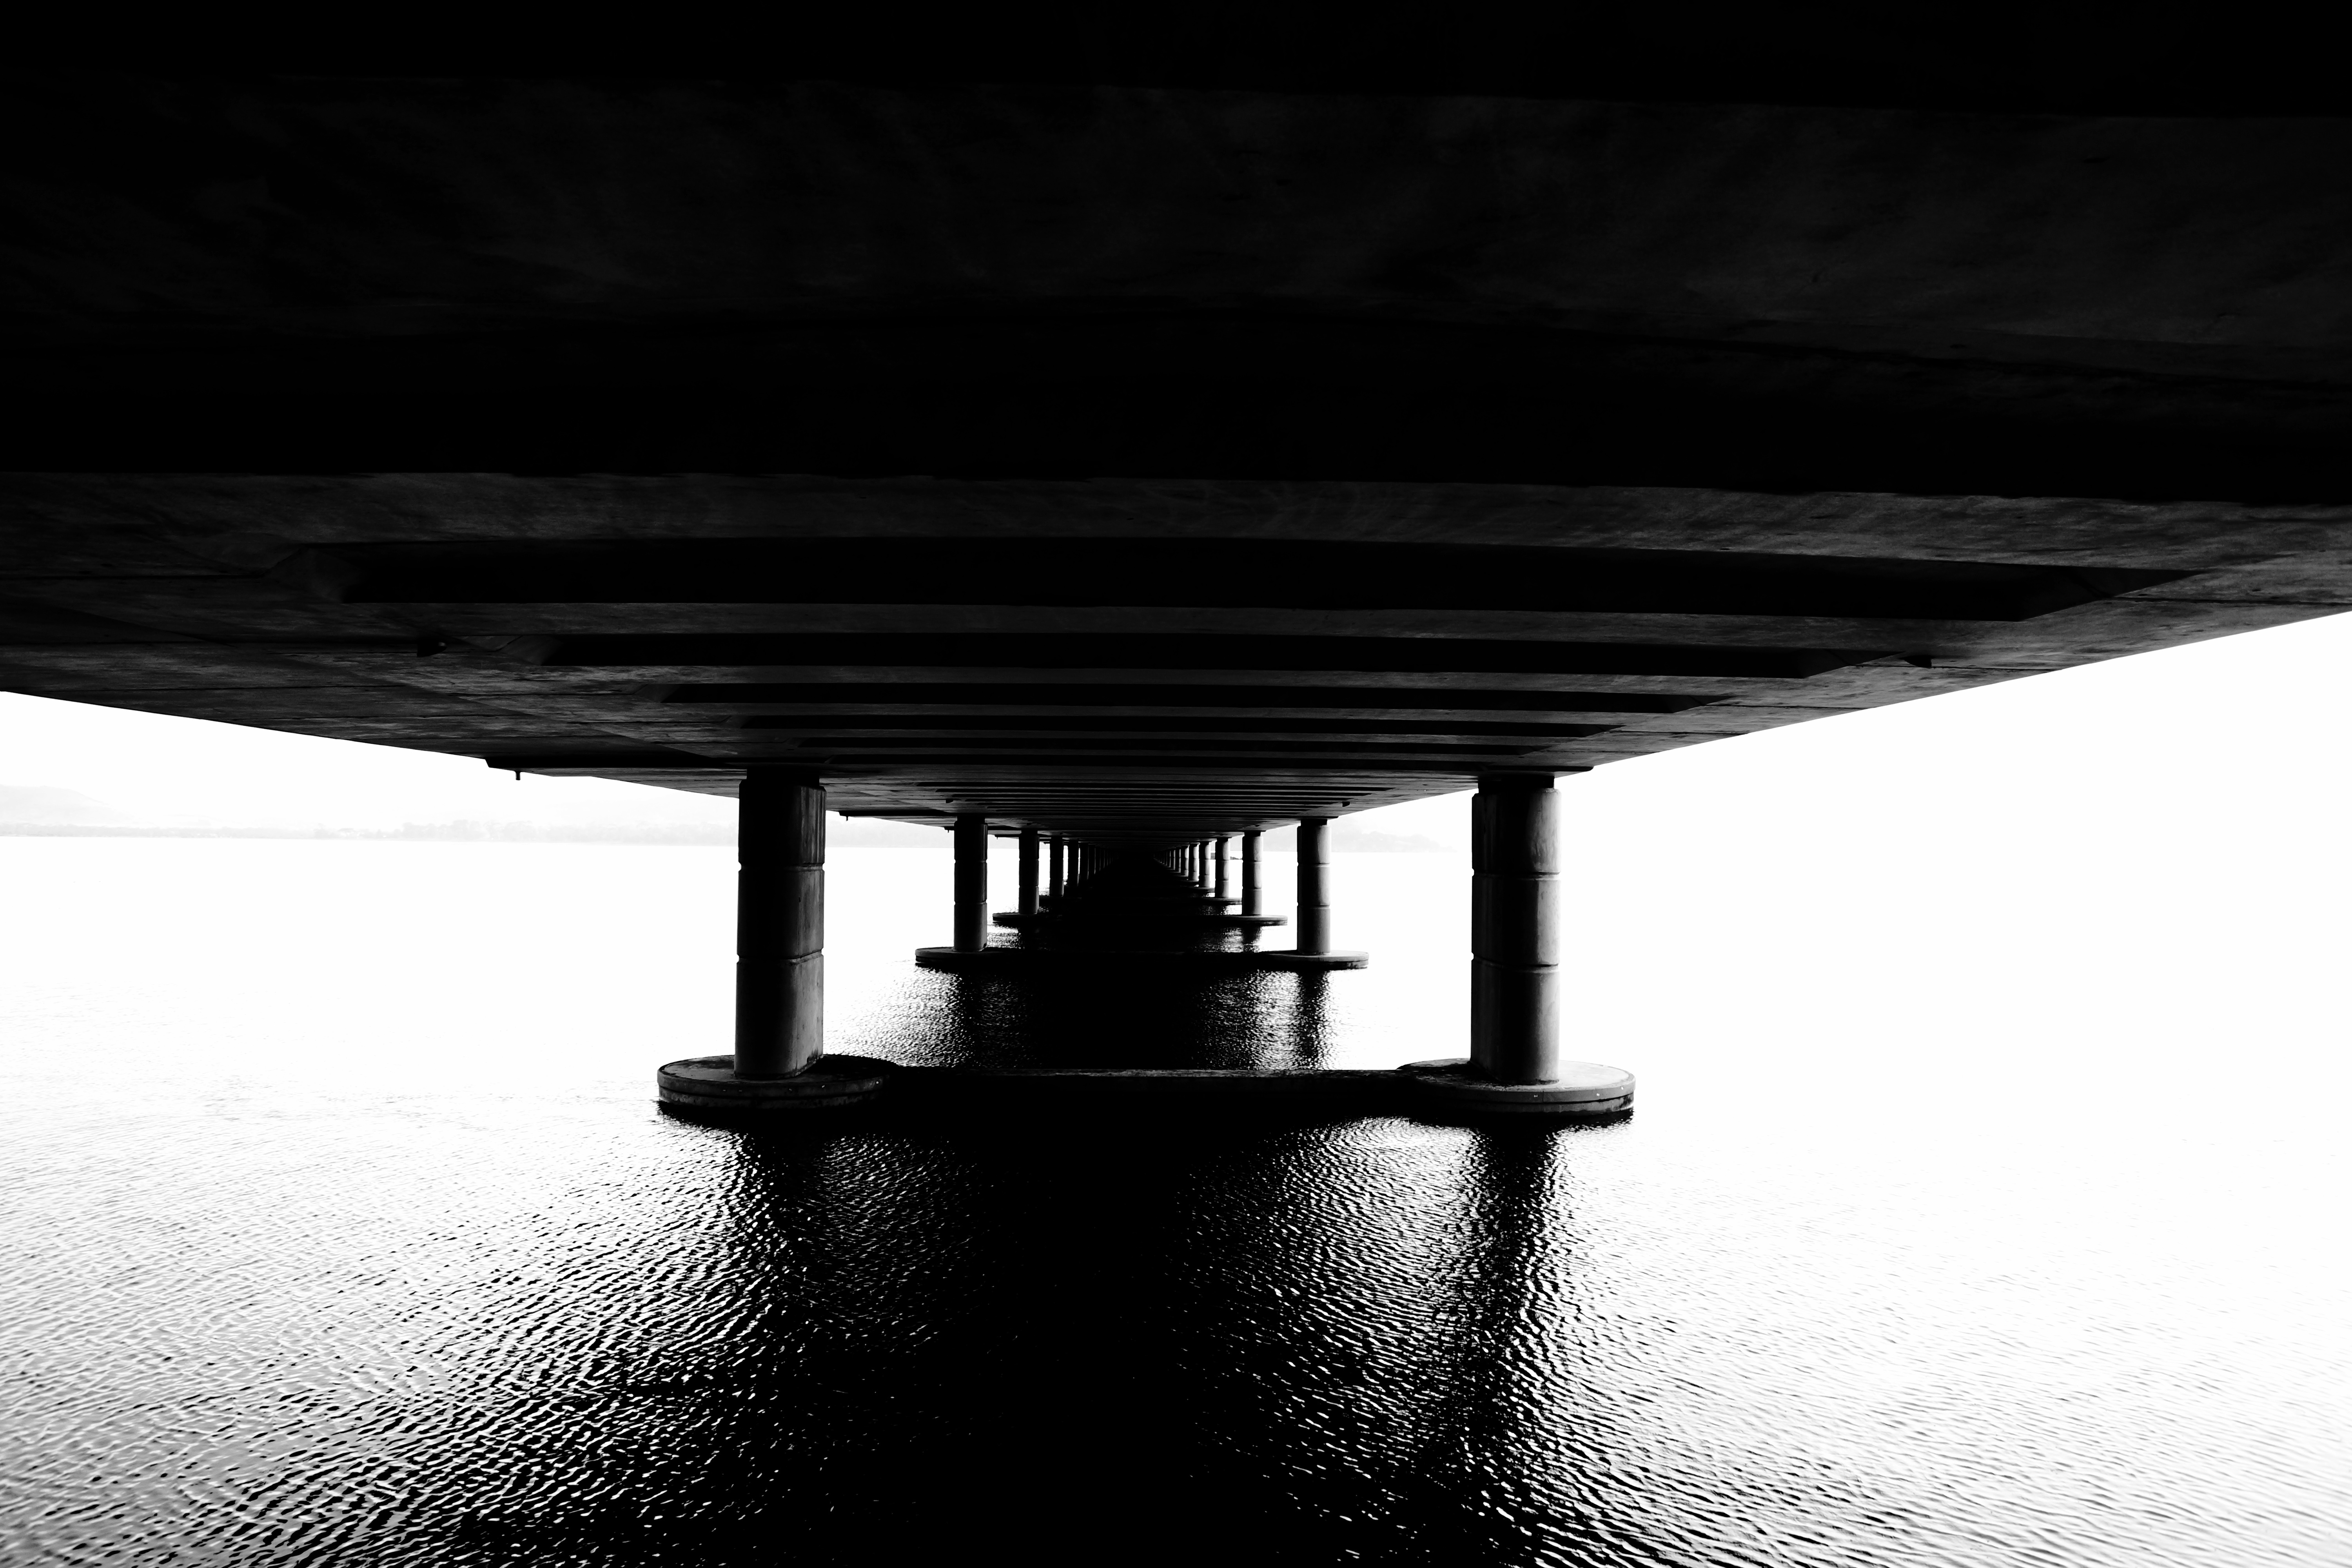 Under the pier photo